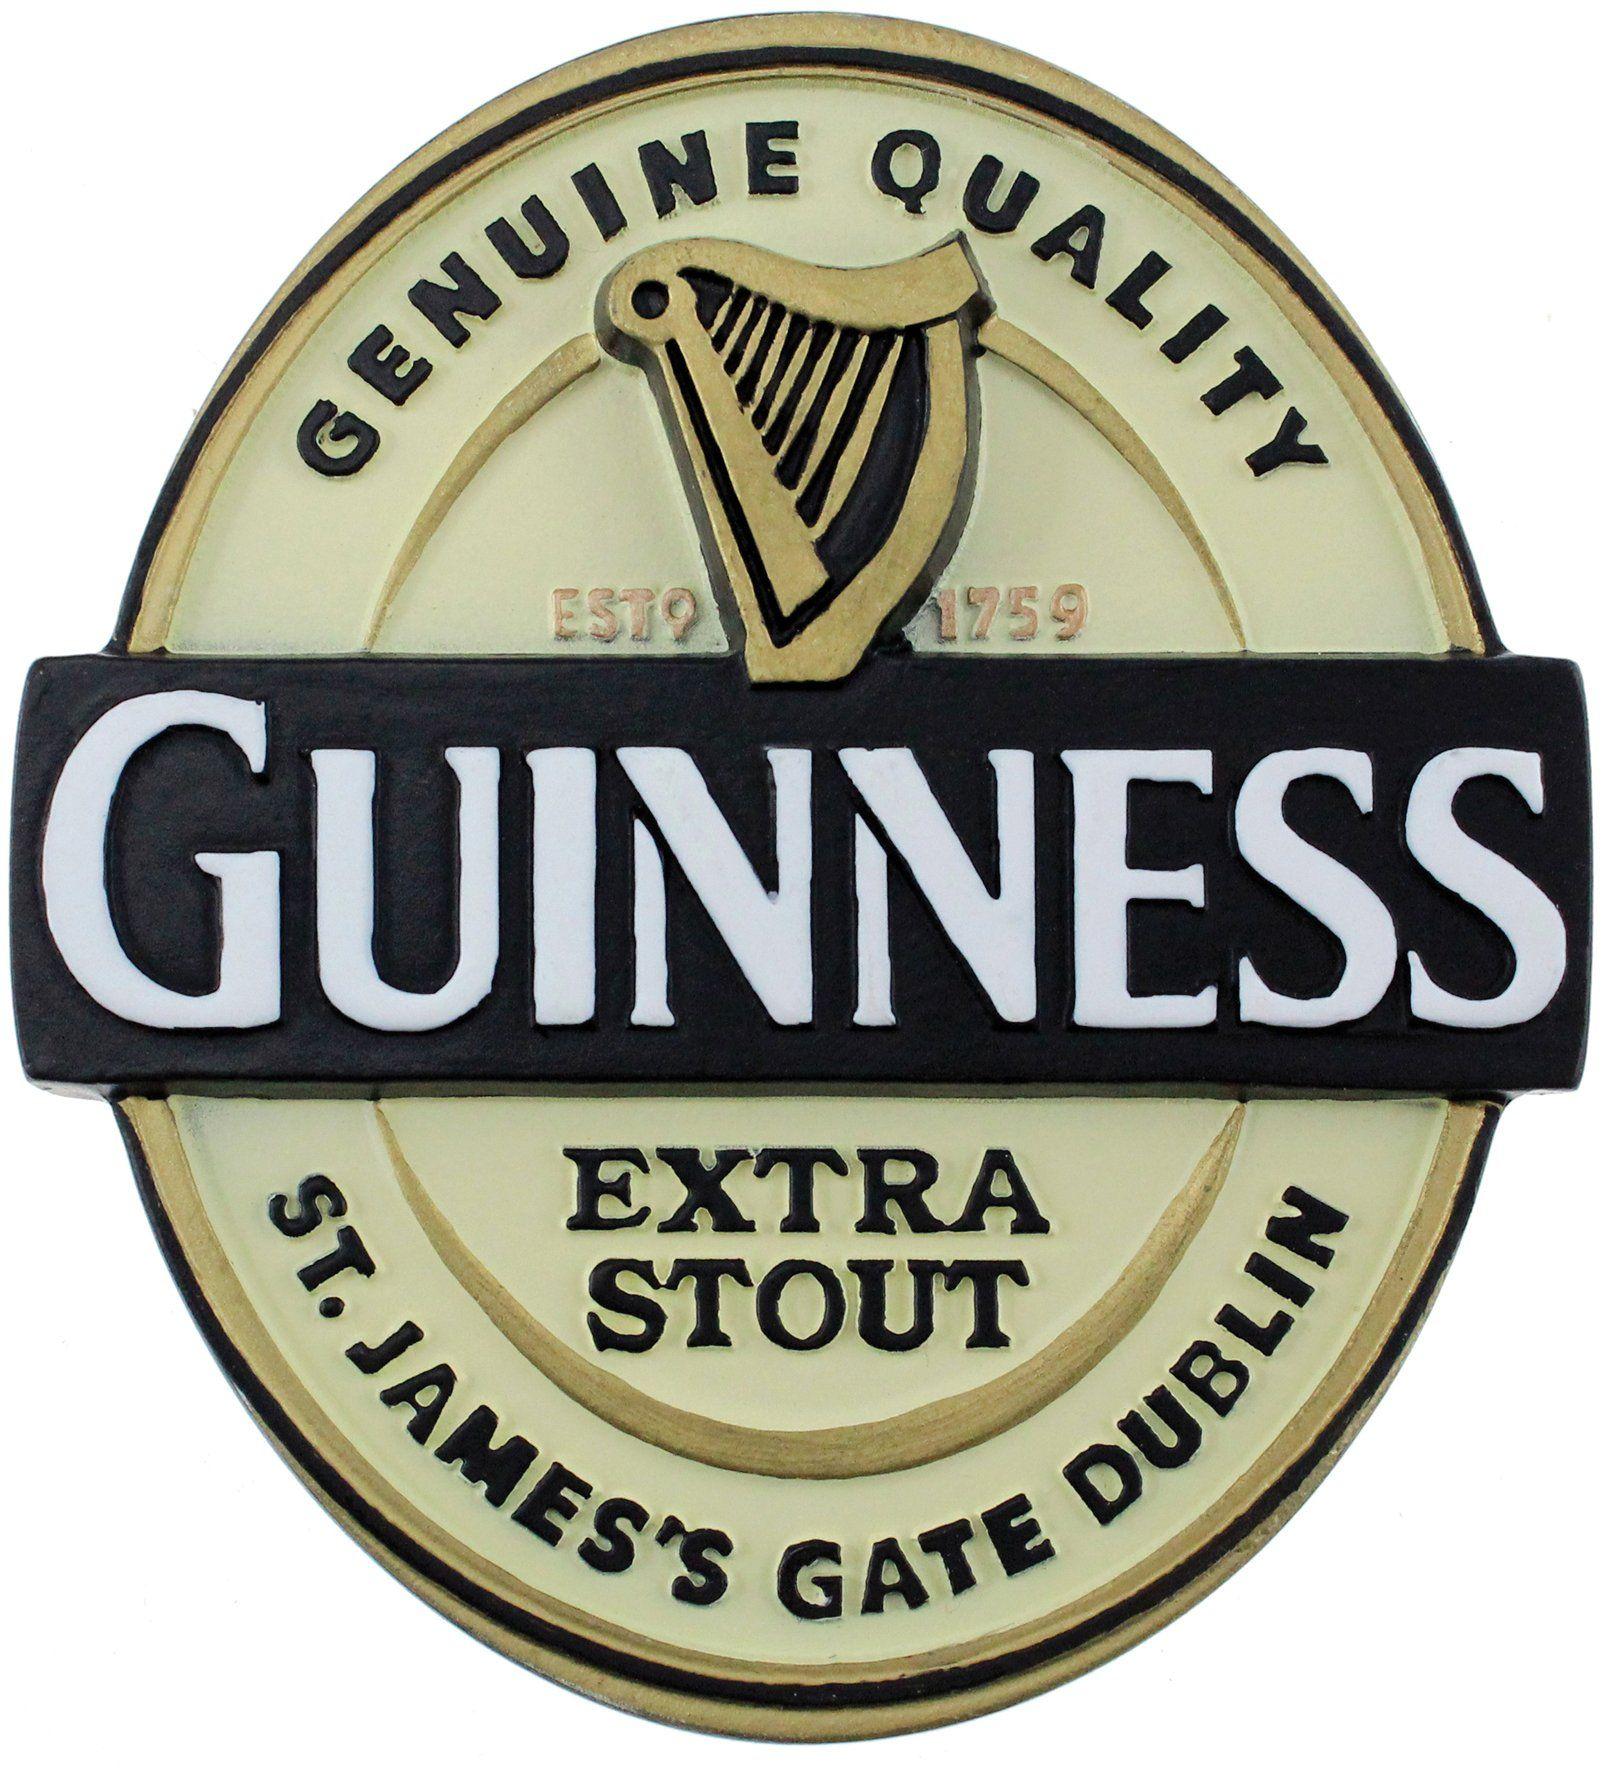 Guinness Logo - Guinness Logo Refrigerator Magnet | Guinness Giftware in 2019 ...